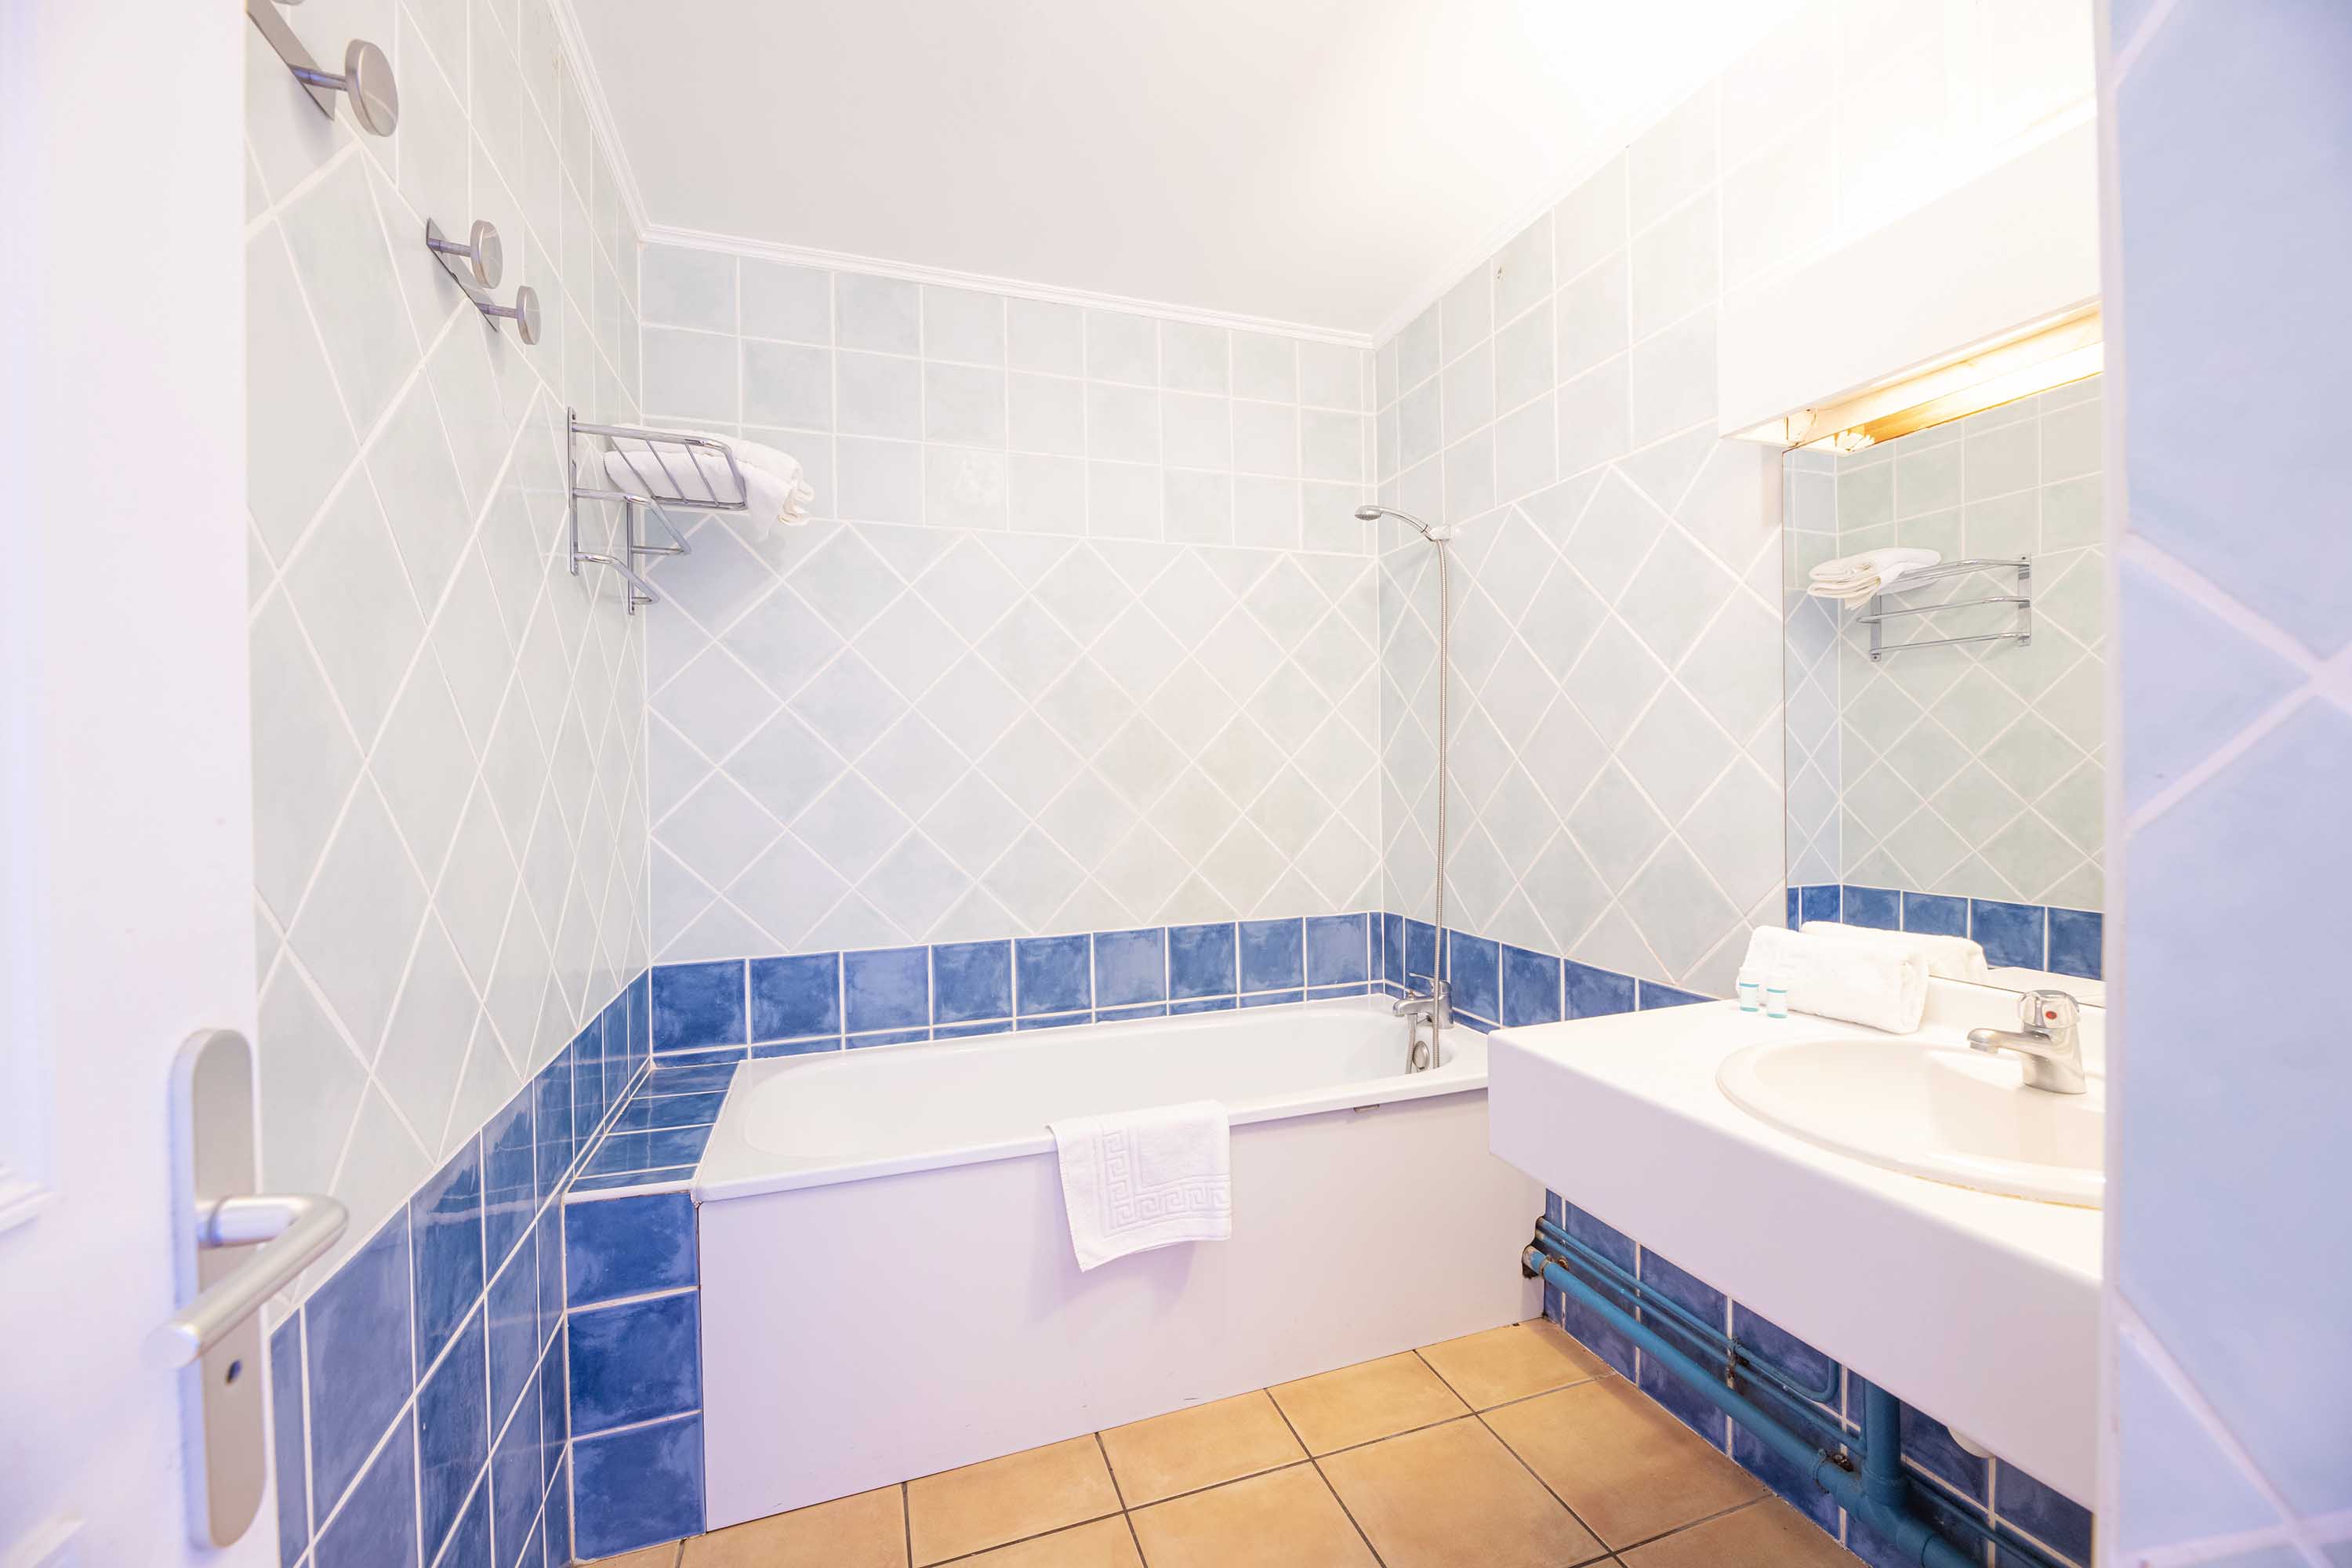 Vue d'une salle de bain avec baignoire | Source : Hôtel Le Relais des Cîmes - www.relaisdescimes.com